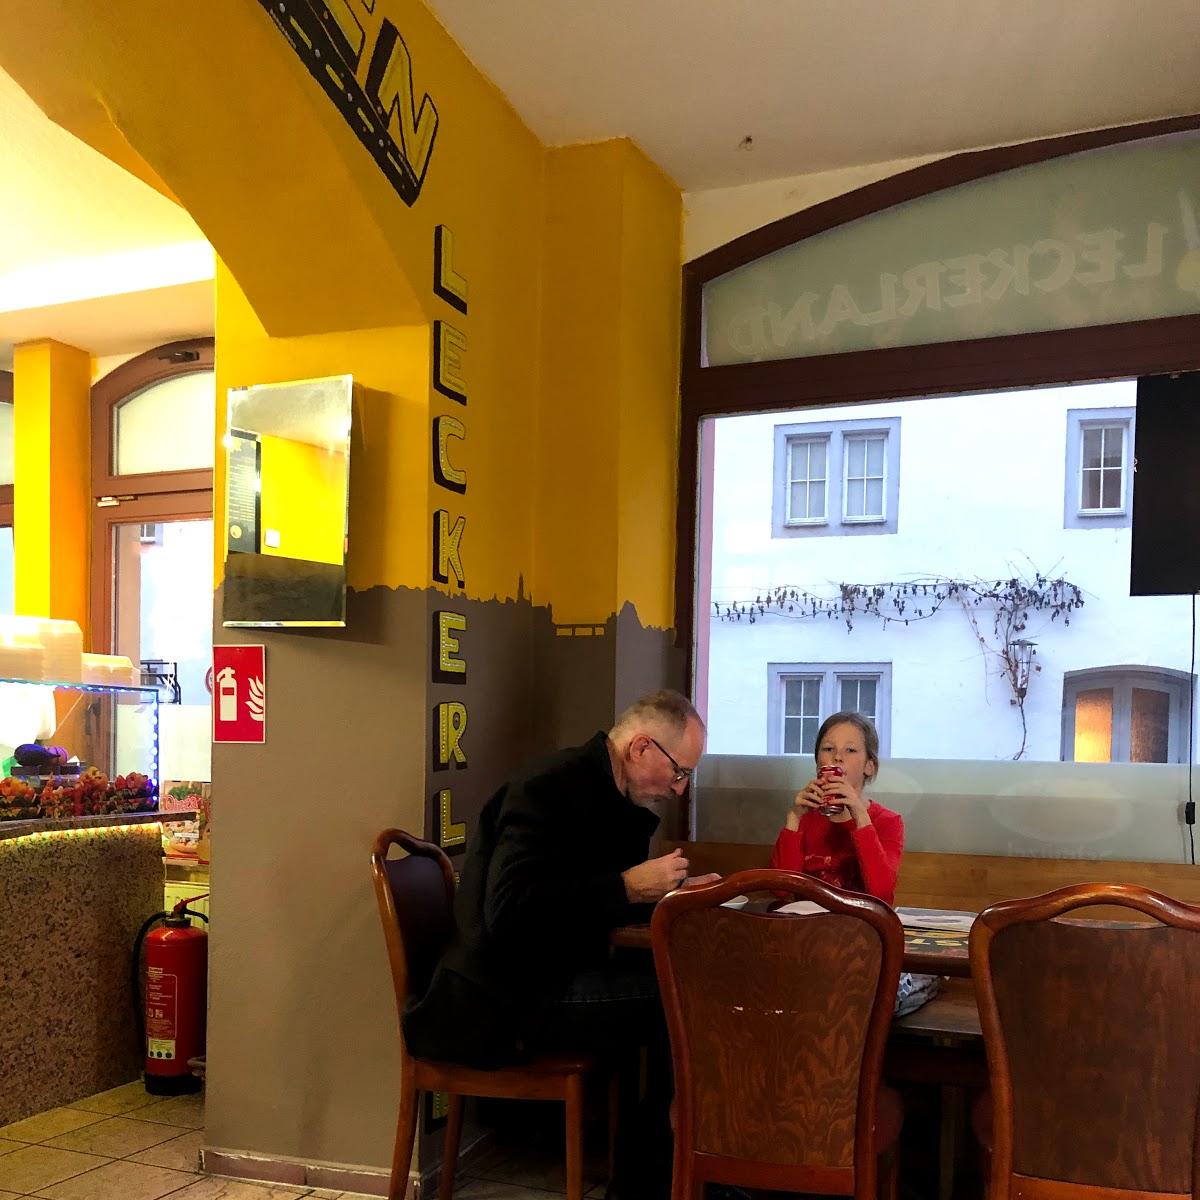 Restaurant "Döner Kebab Haus DELAL" in Meißen